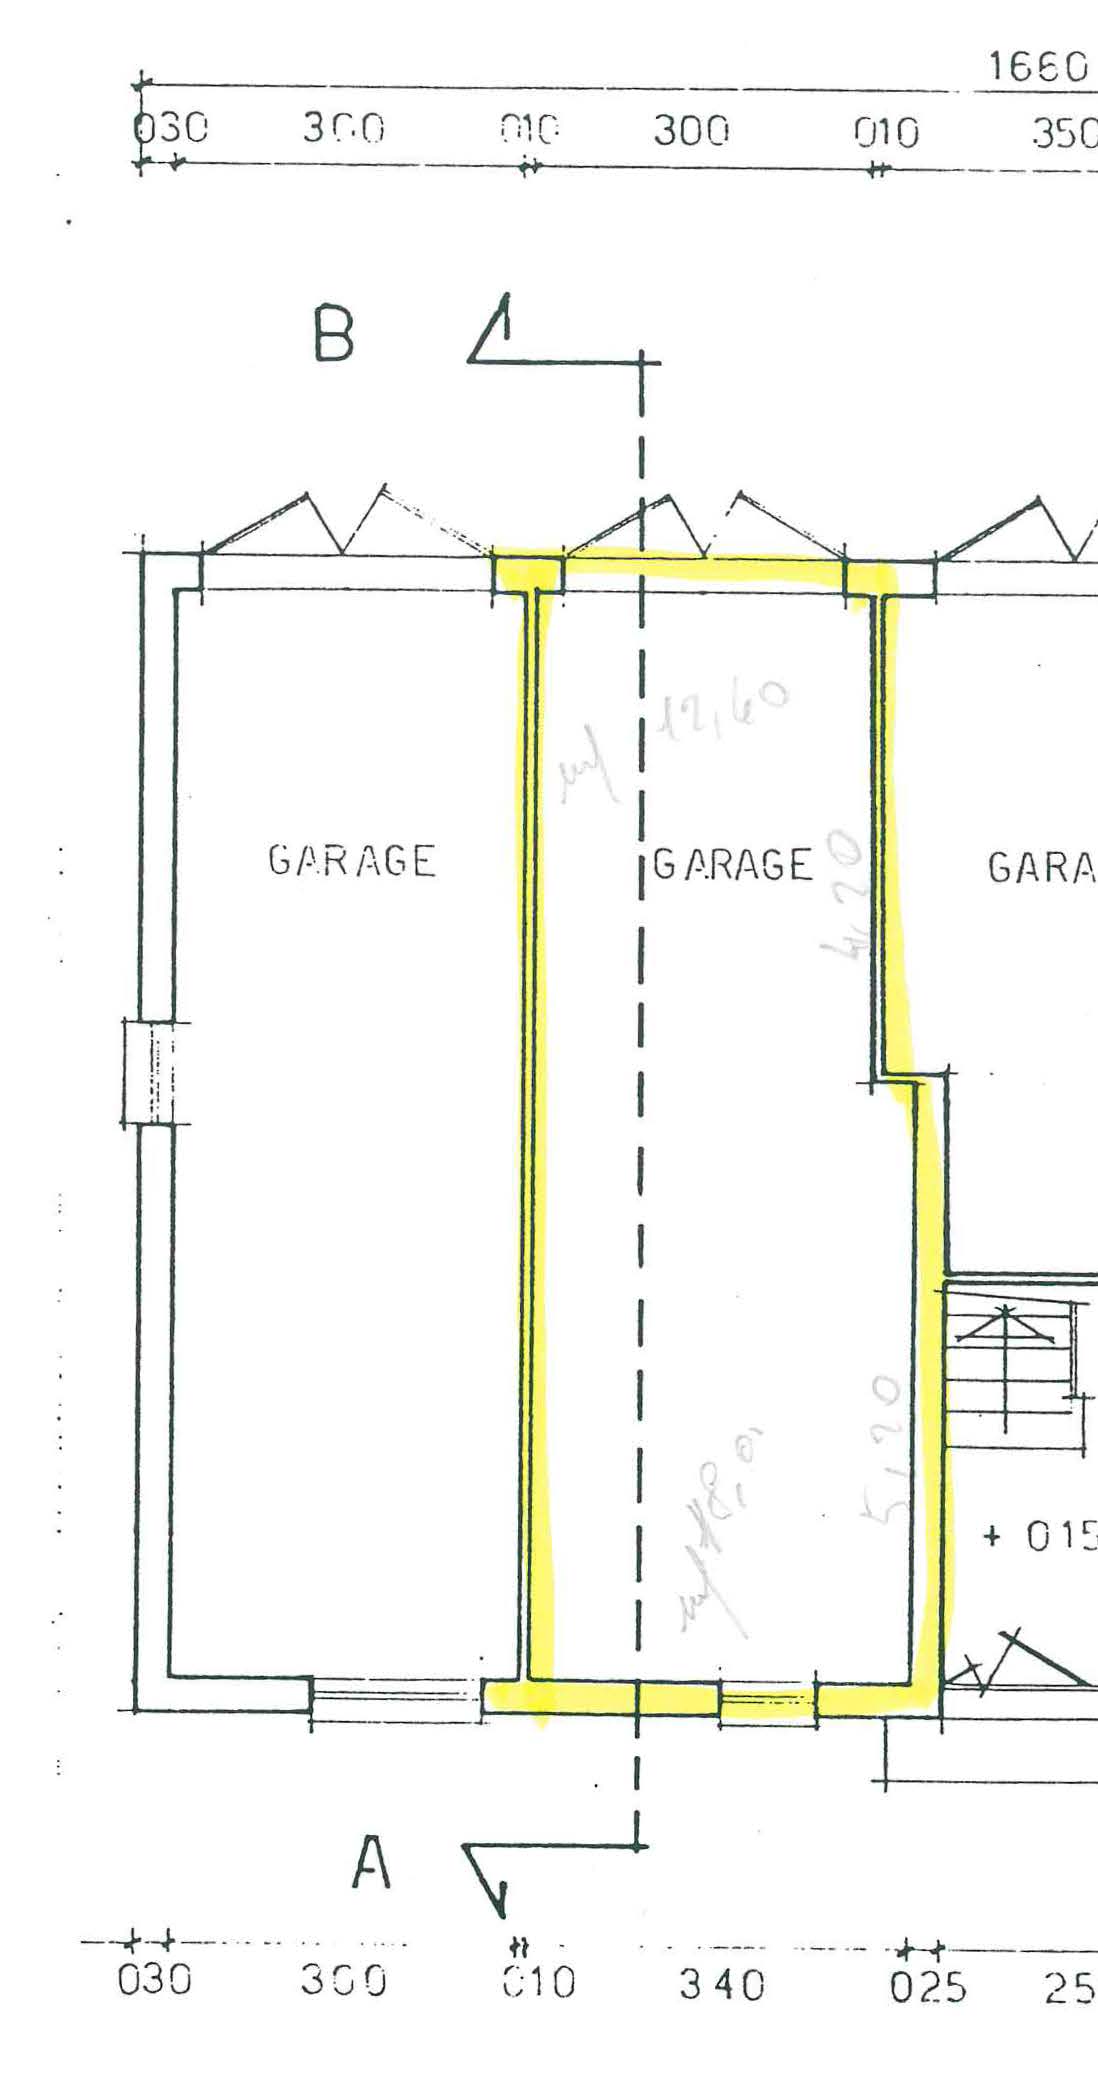 Planimetria-Garage